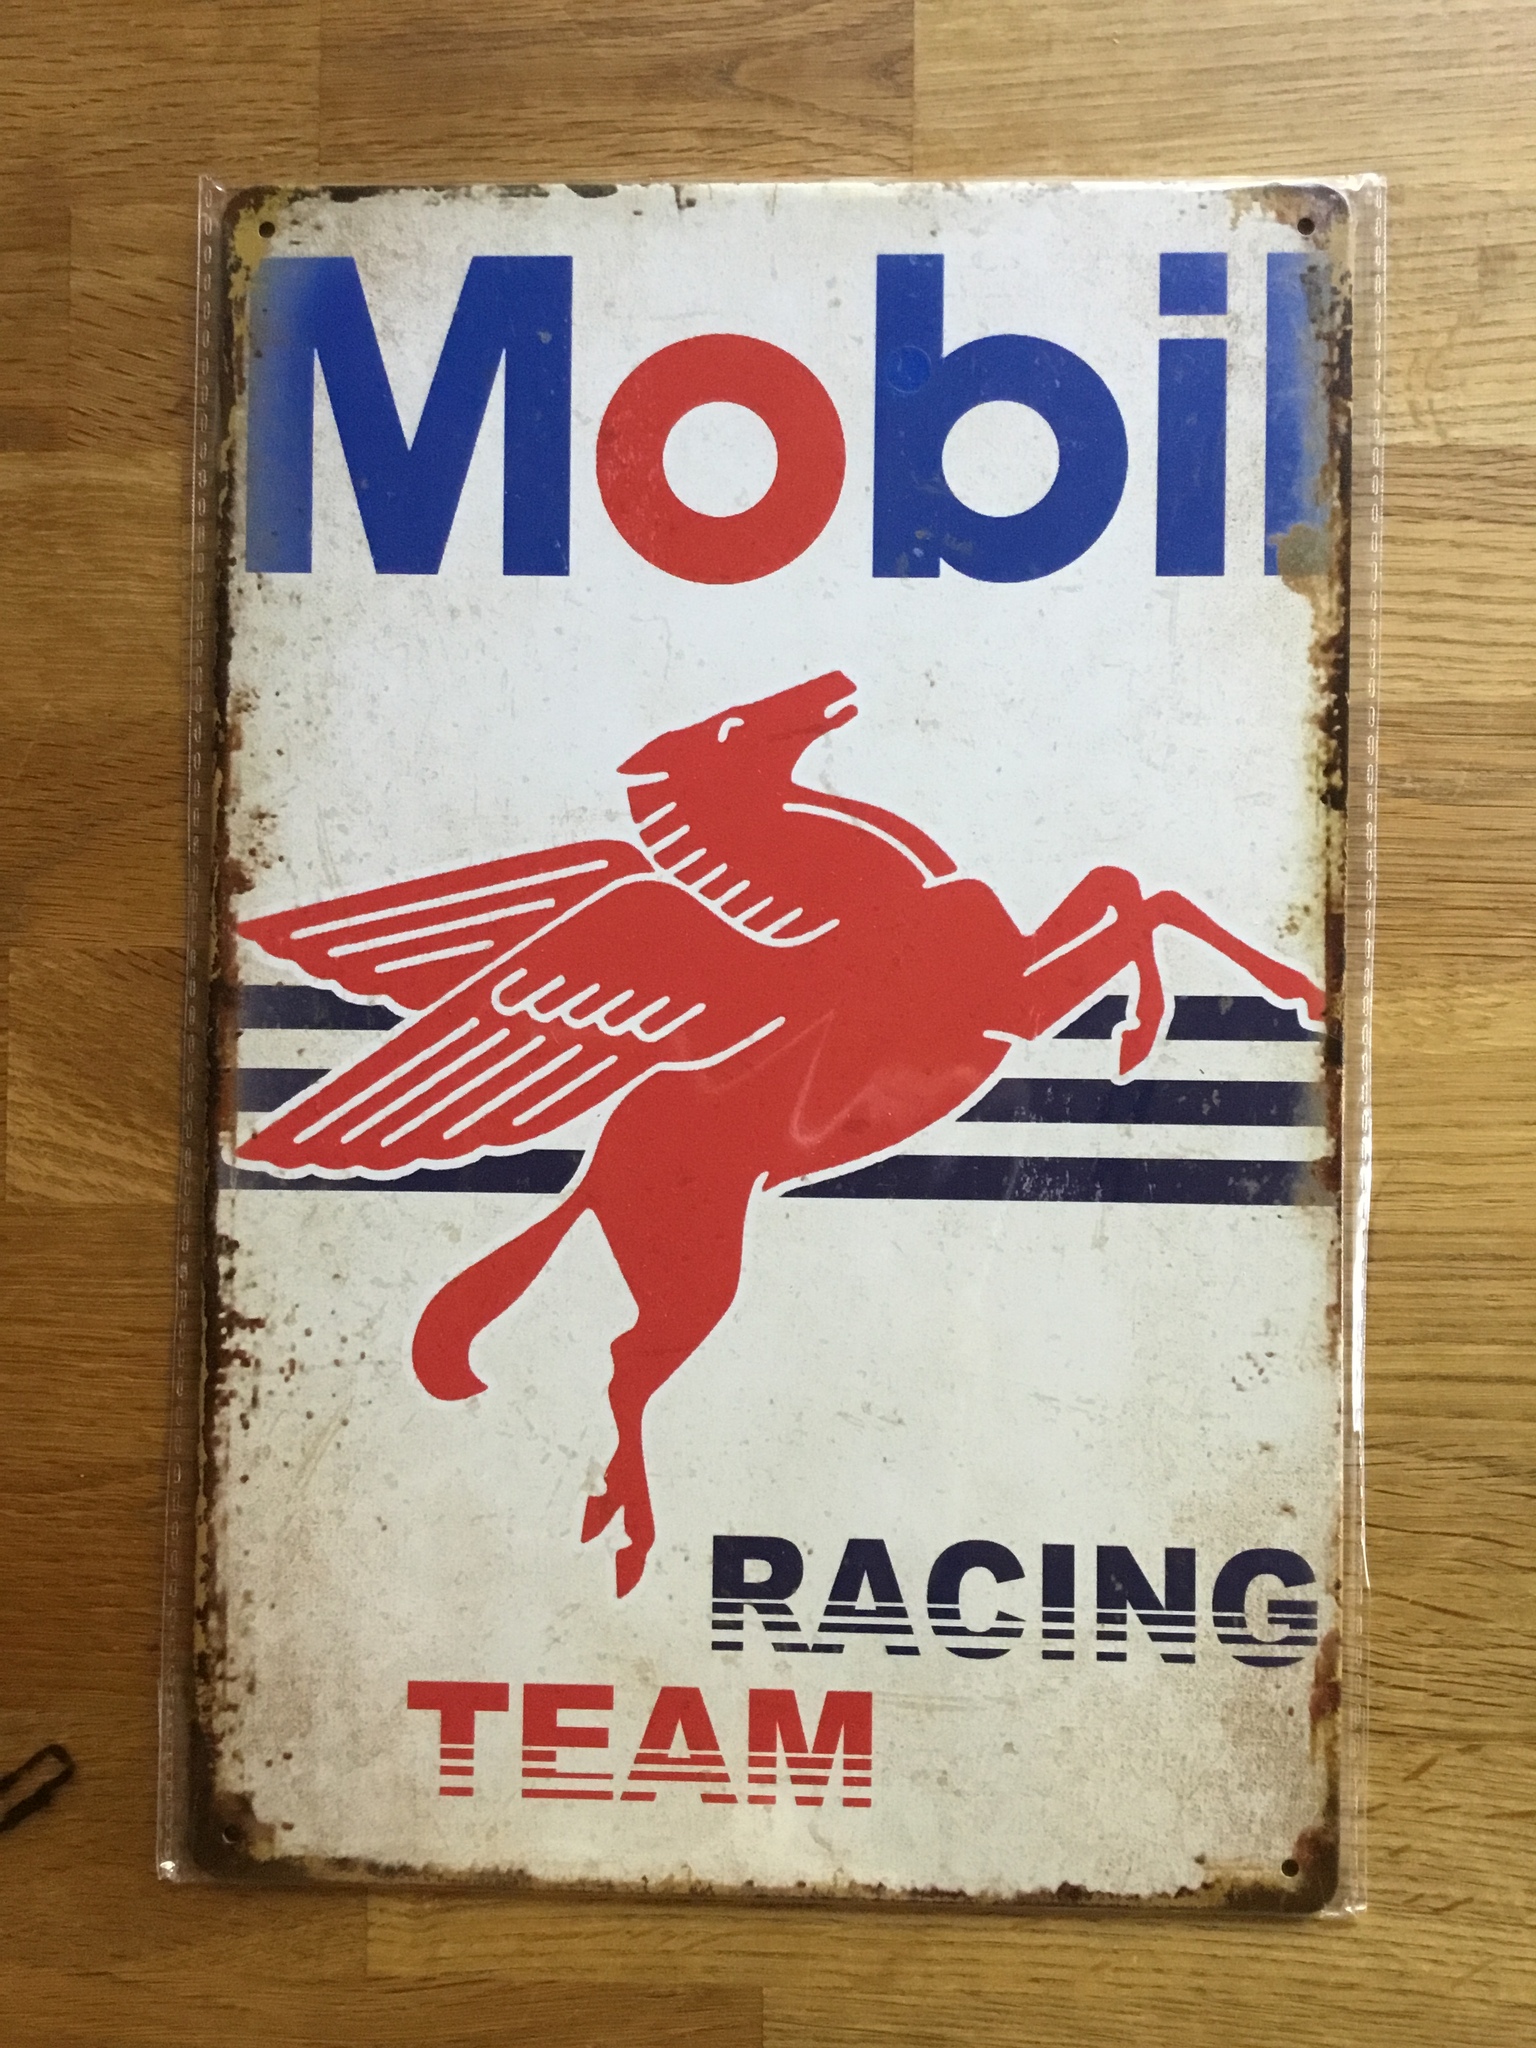 Mobil racing team